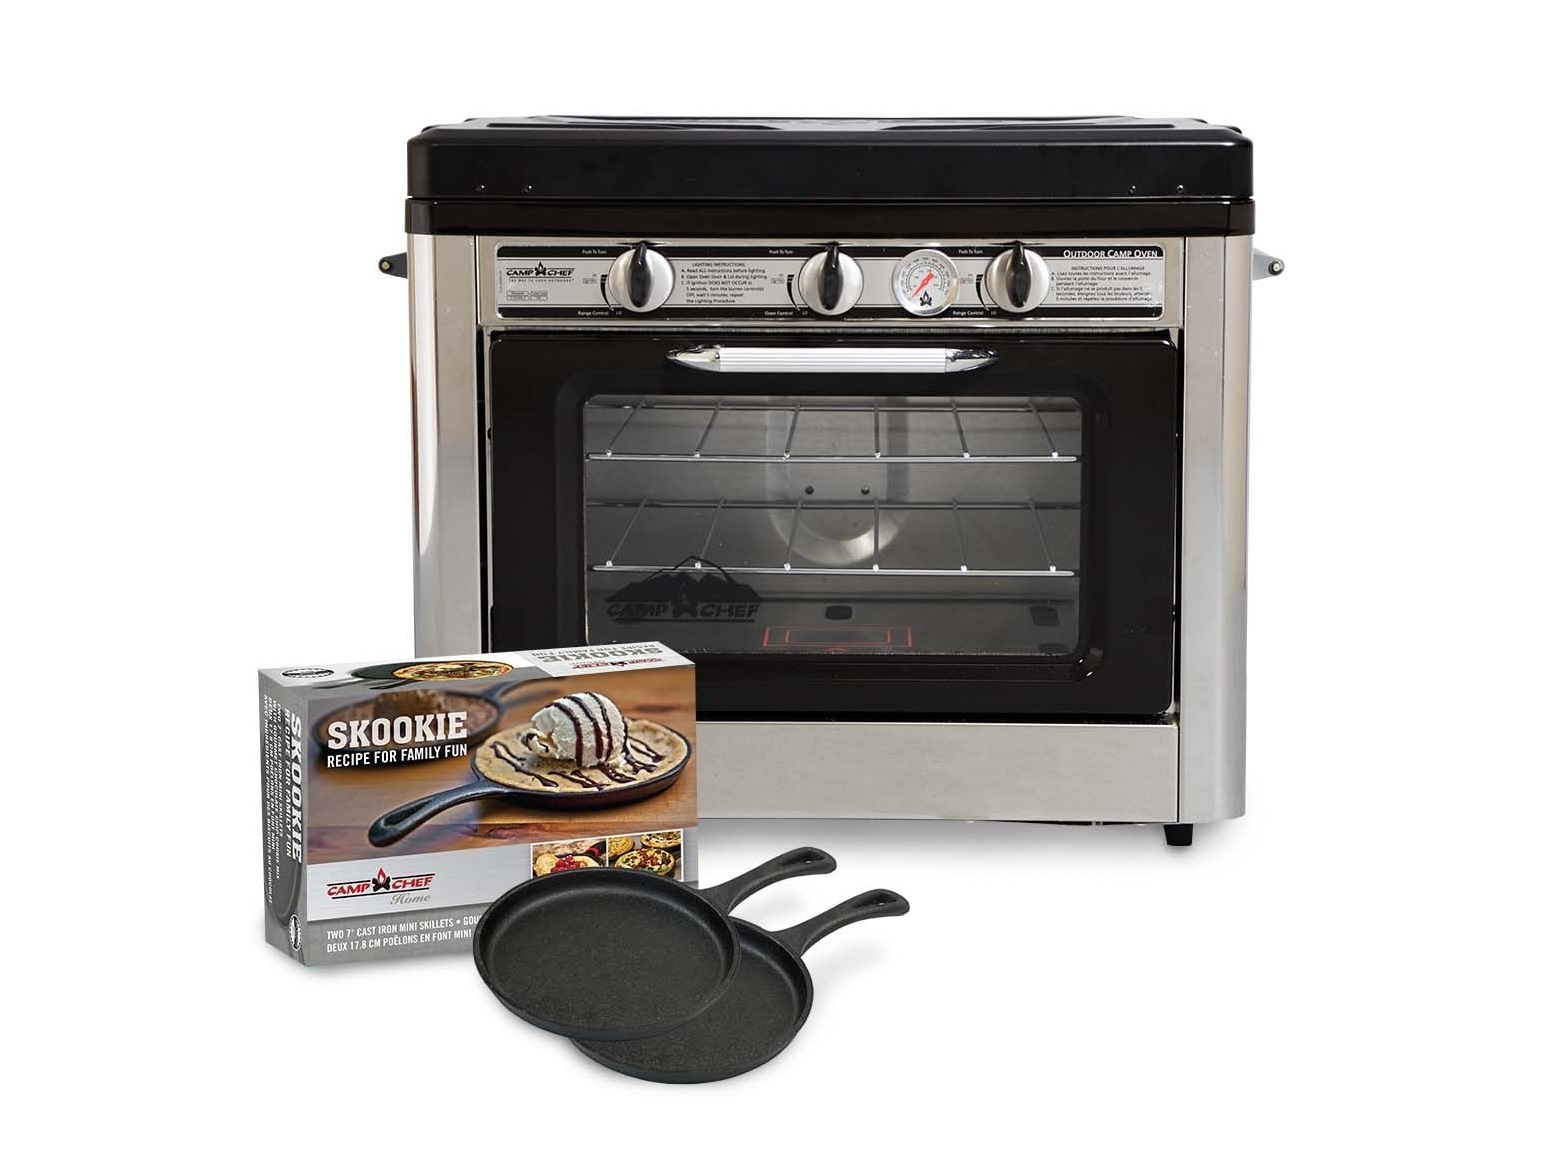 Outdoor oven + Skookie